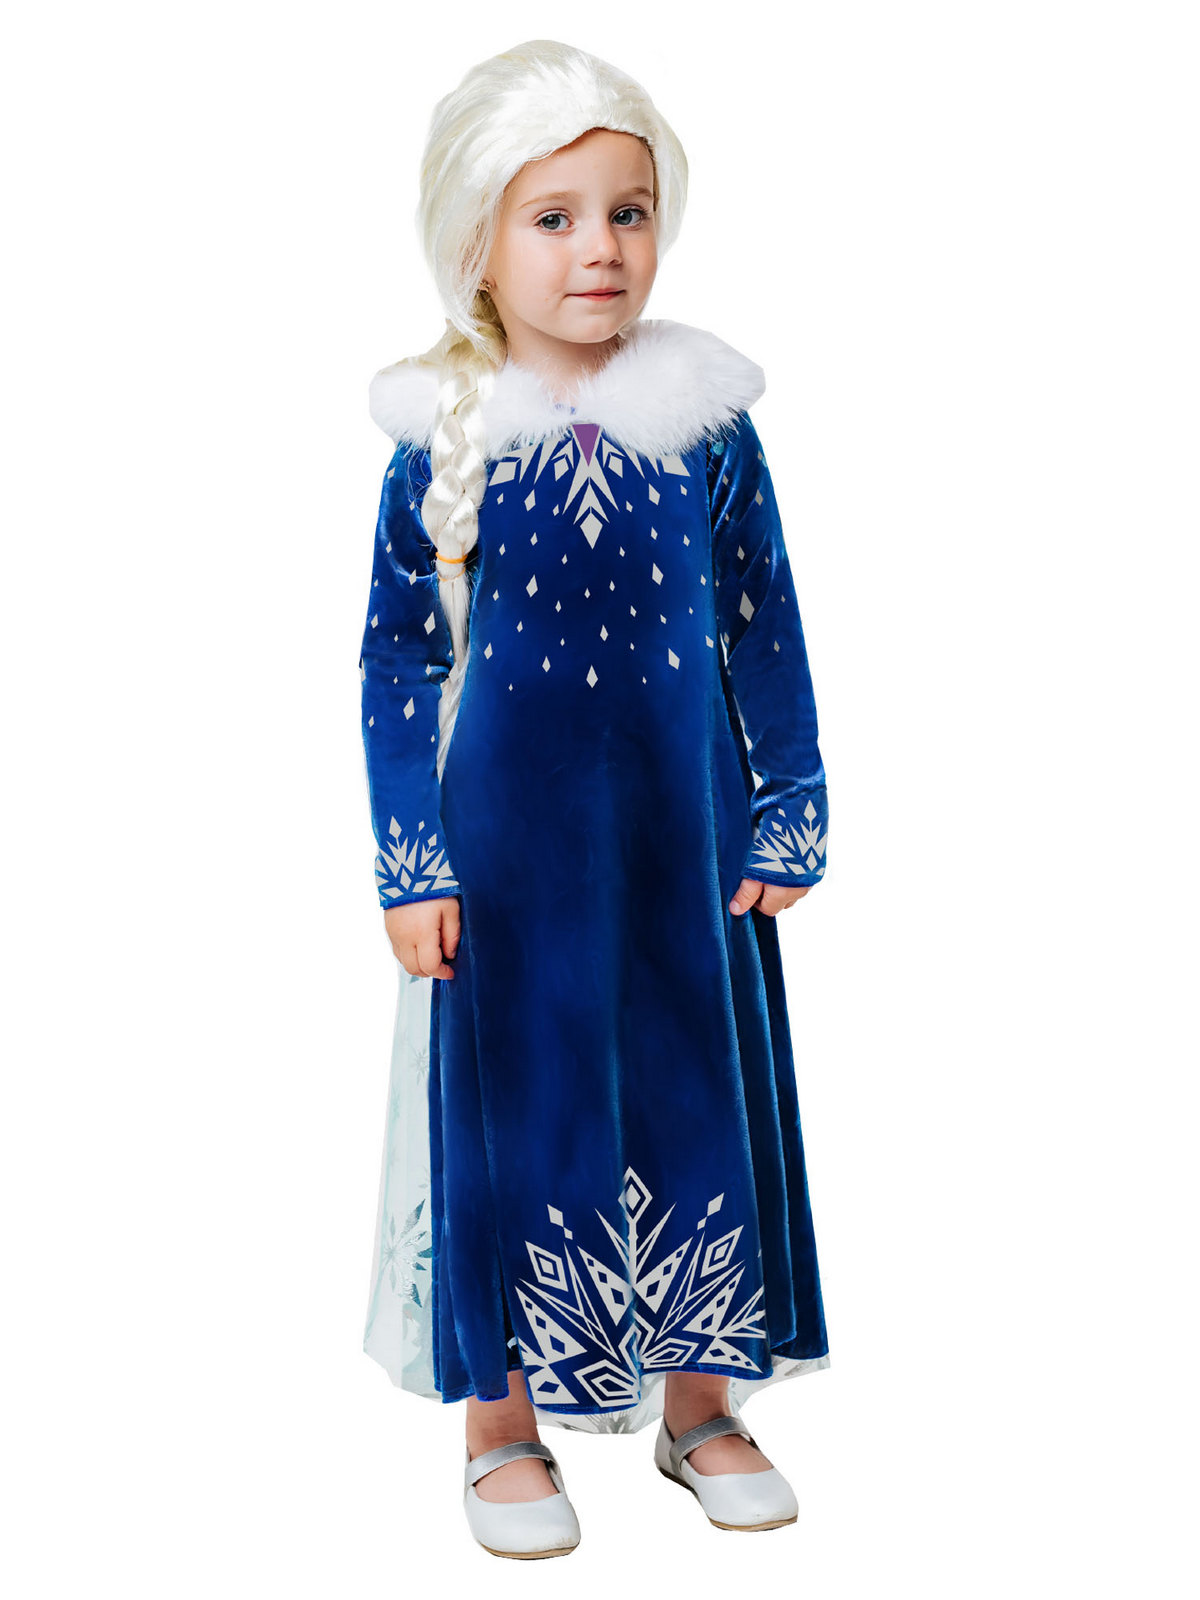 Карнавальный костюм Batik 9004 к-21 Эльза зимнее платье, синий, 116 карнавальный костюм batik 9004 к 21 эльза зимнее платье синий 128